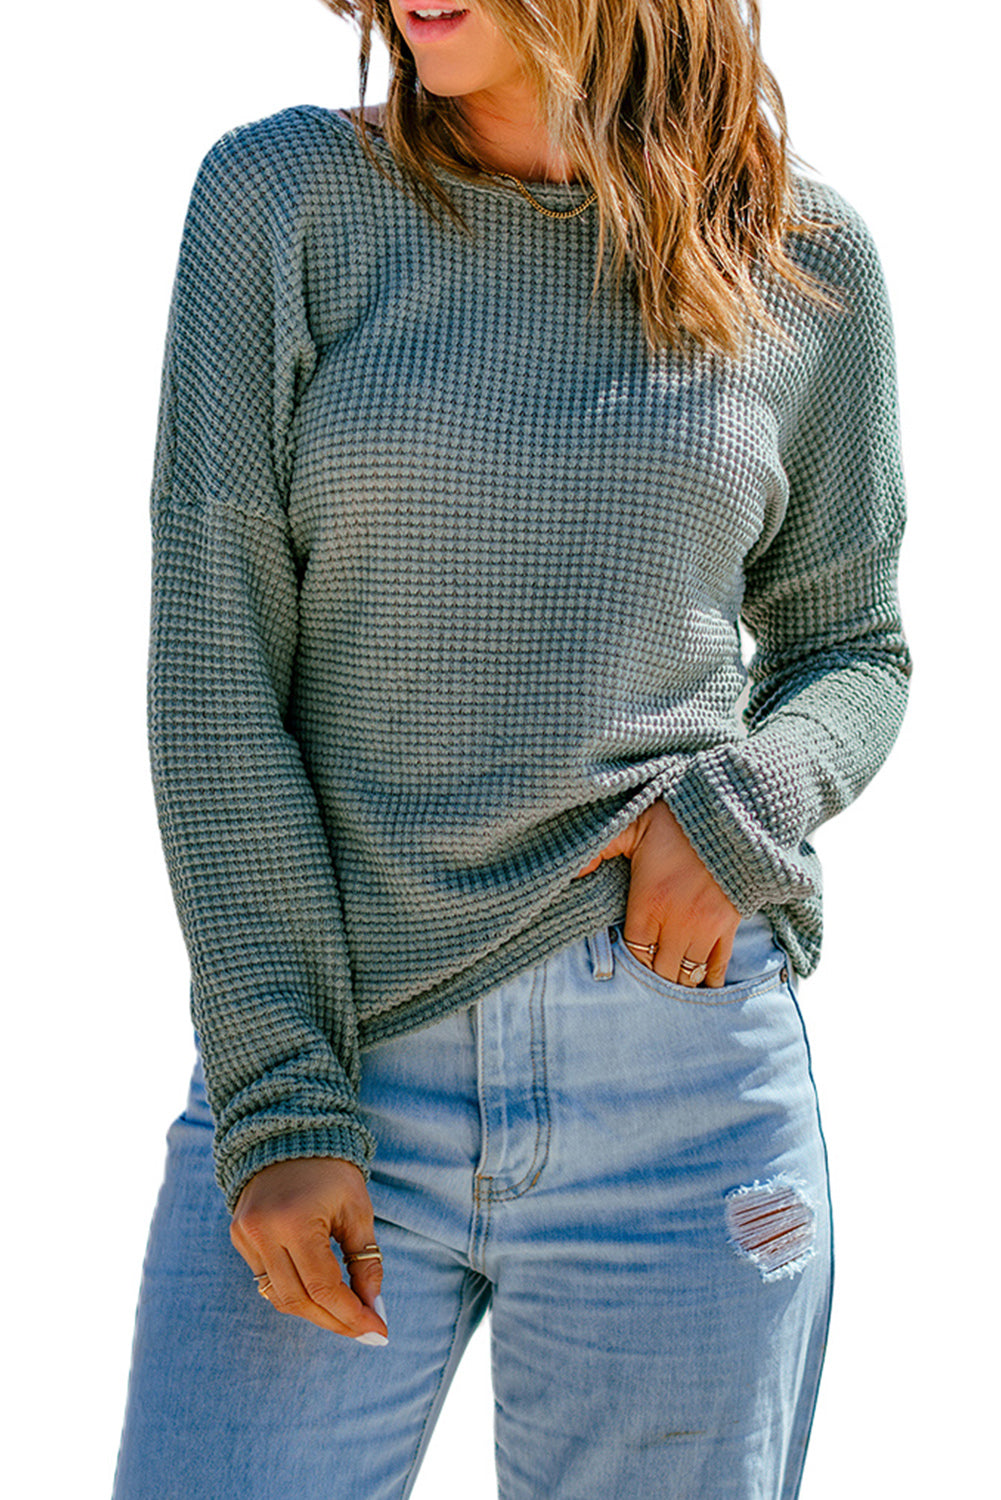 Temno rjava vafelj pletena majica z dolgimi rokavi na spuščena ramena